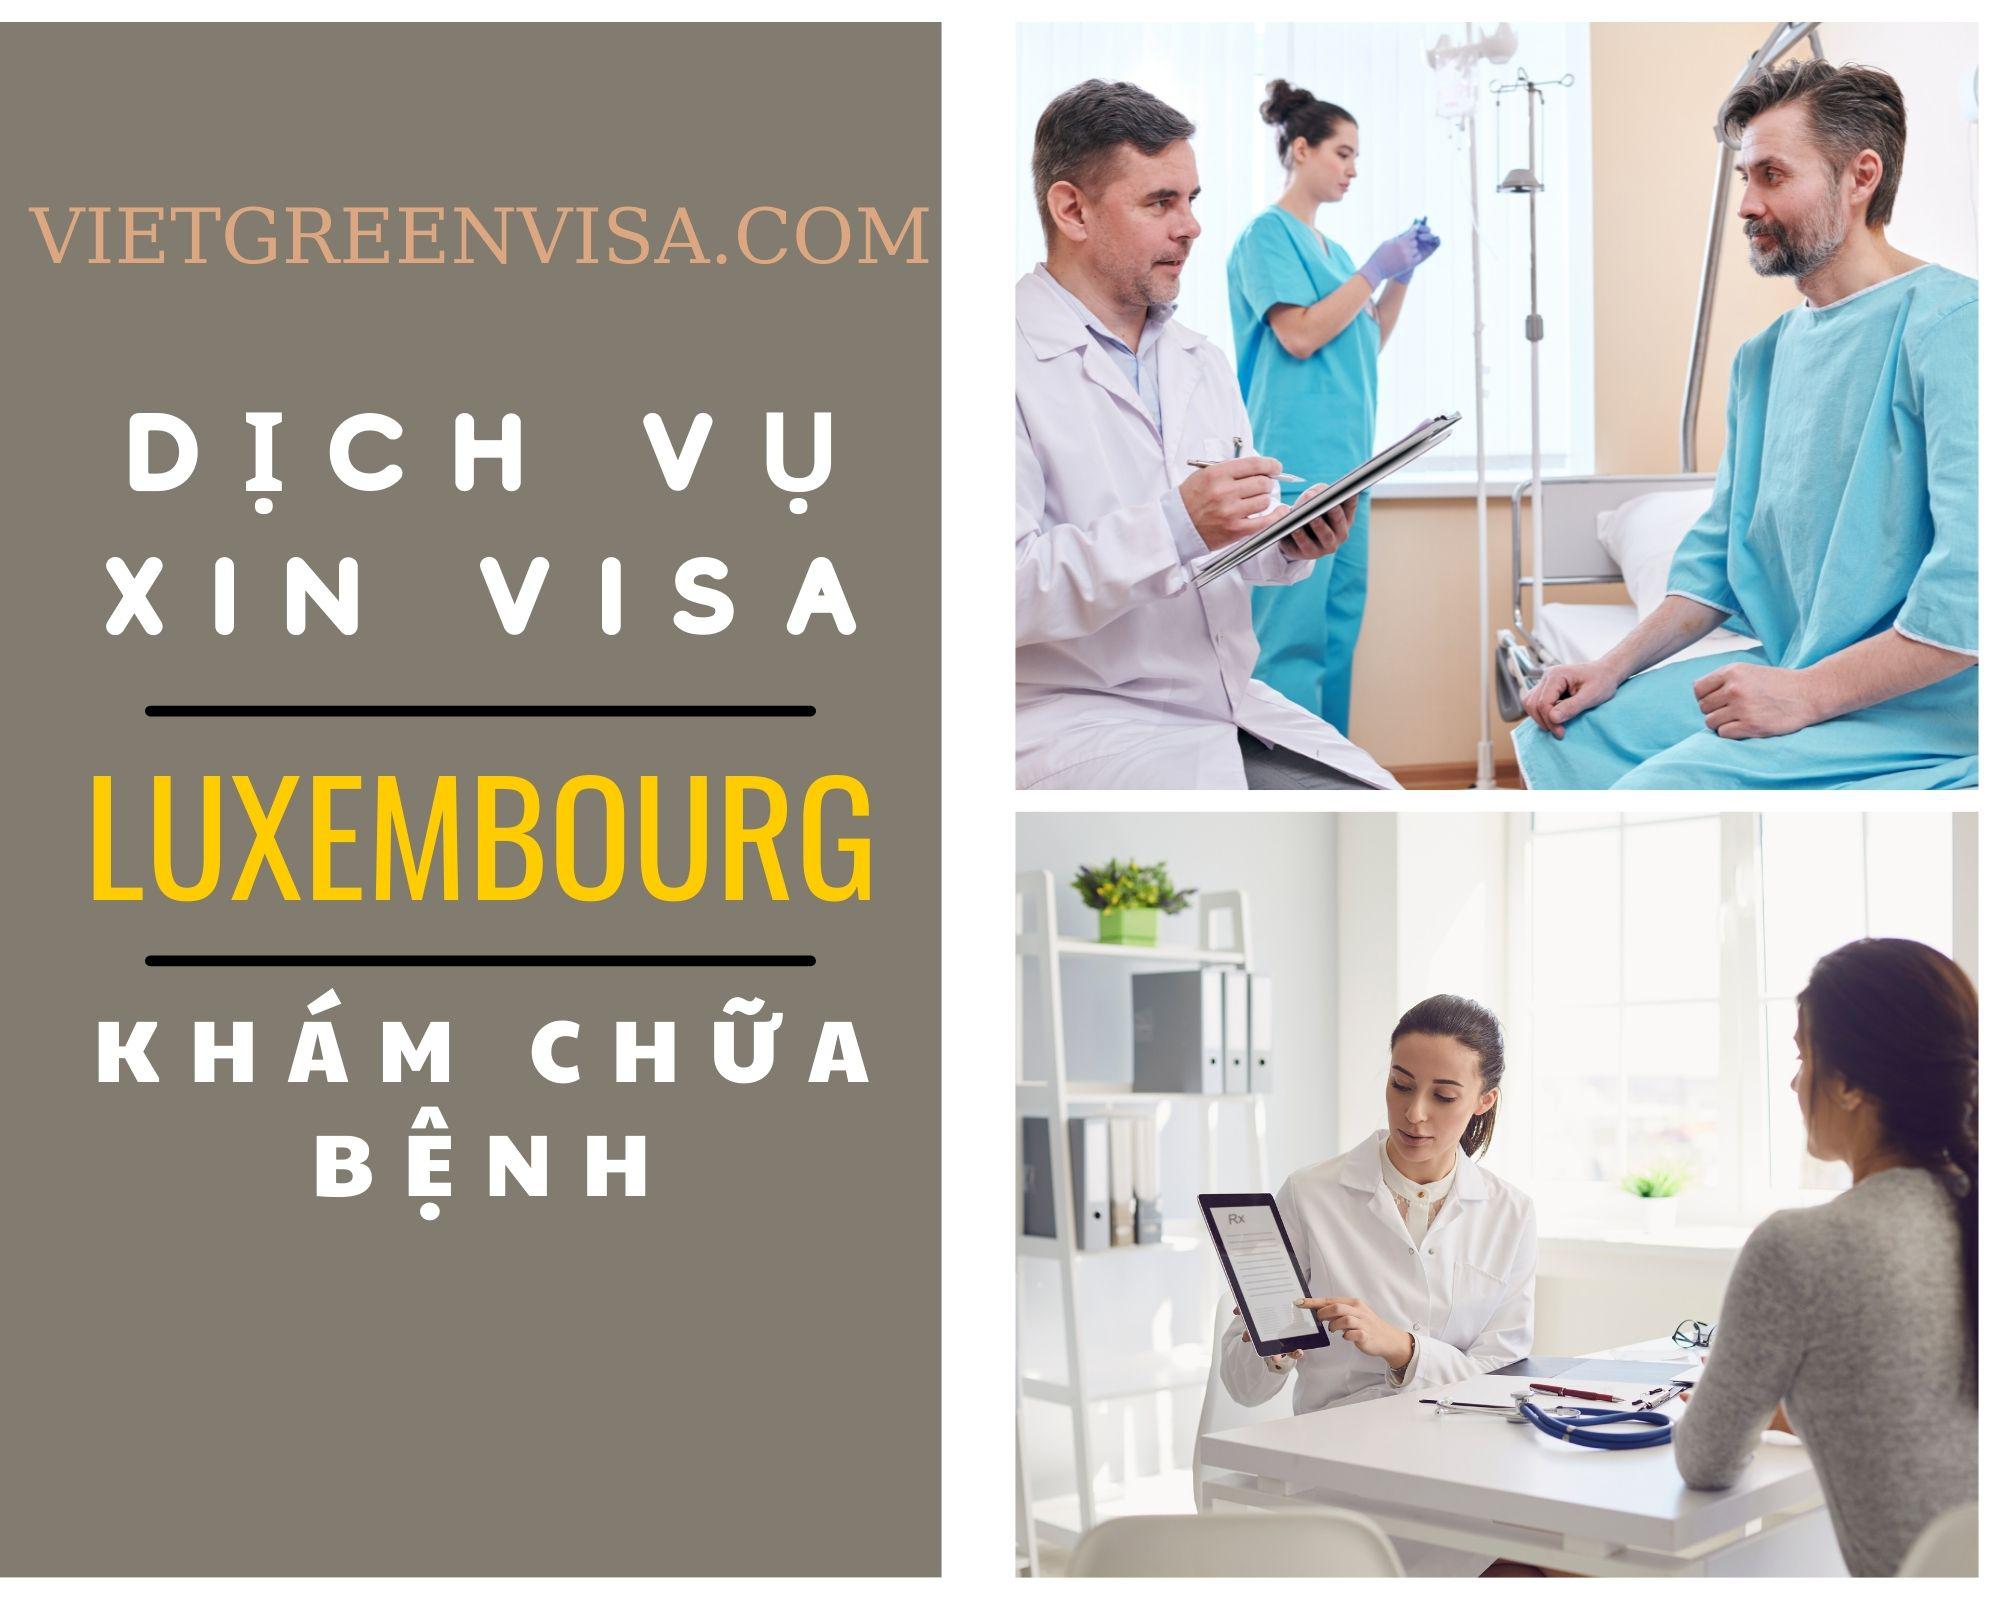 Dịch vụ xin visa đi Luxembourg khám chữa bệnh nhanh chóng